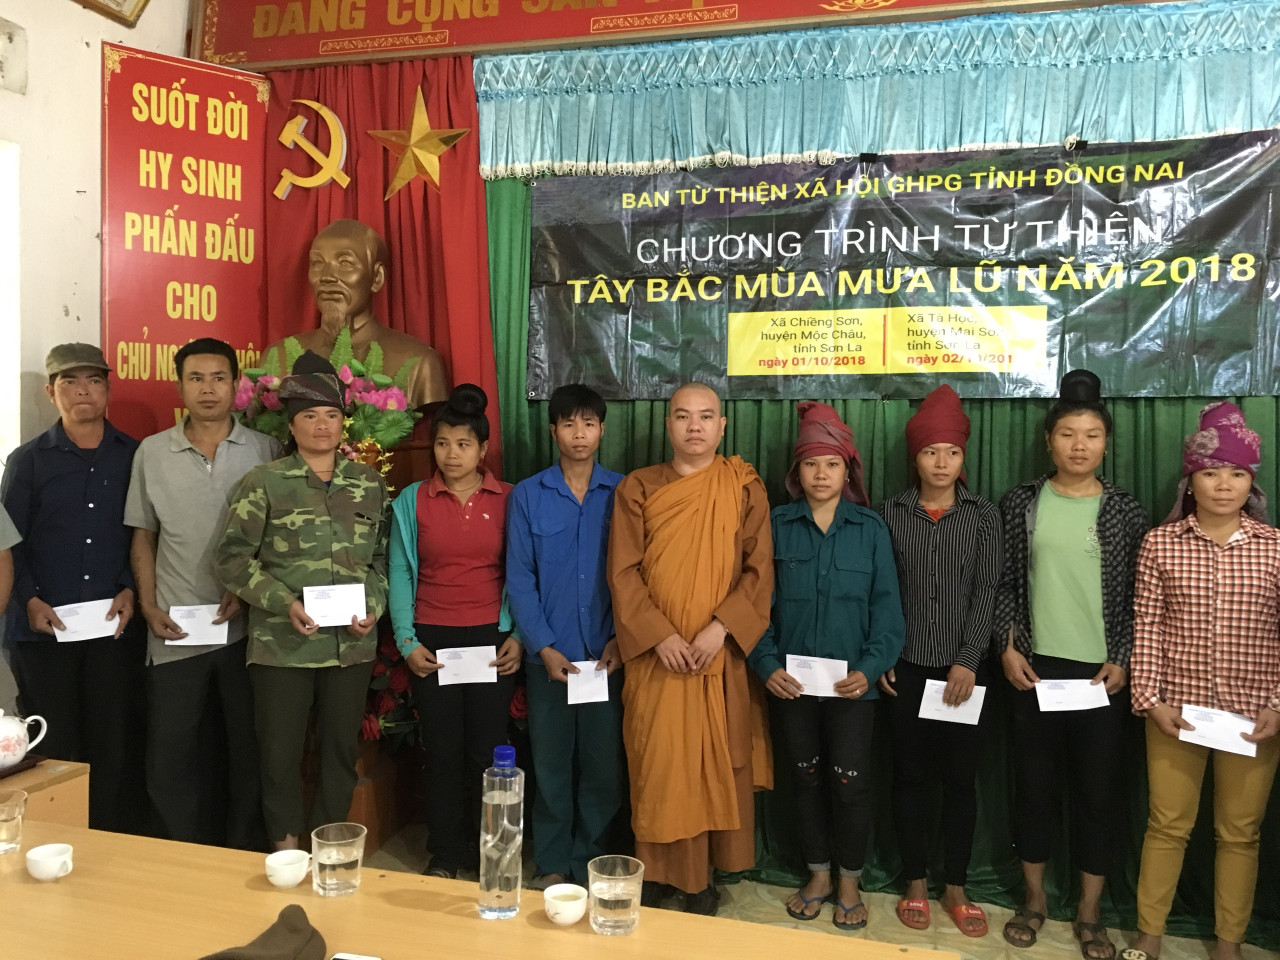 Đồng Nai: Ban Từ Thiện Phật giáo tỉnh, tặng quà cho đồng bào sau lũ lụt “vùng miền núi Tây Bắc – Đông Bắc” Việt Nam